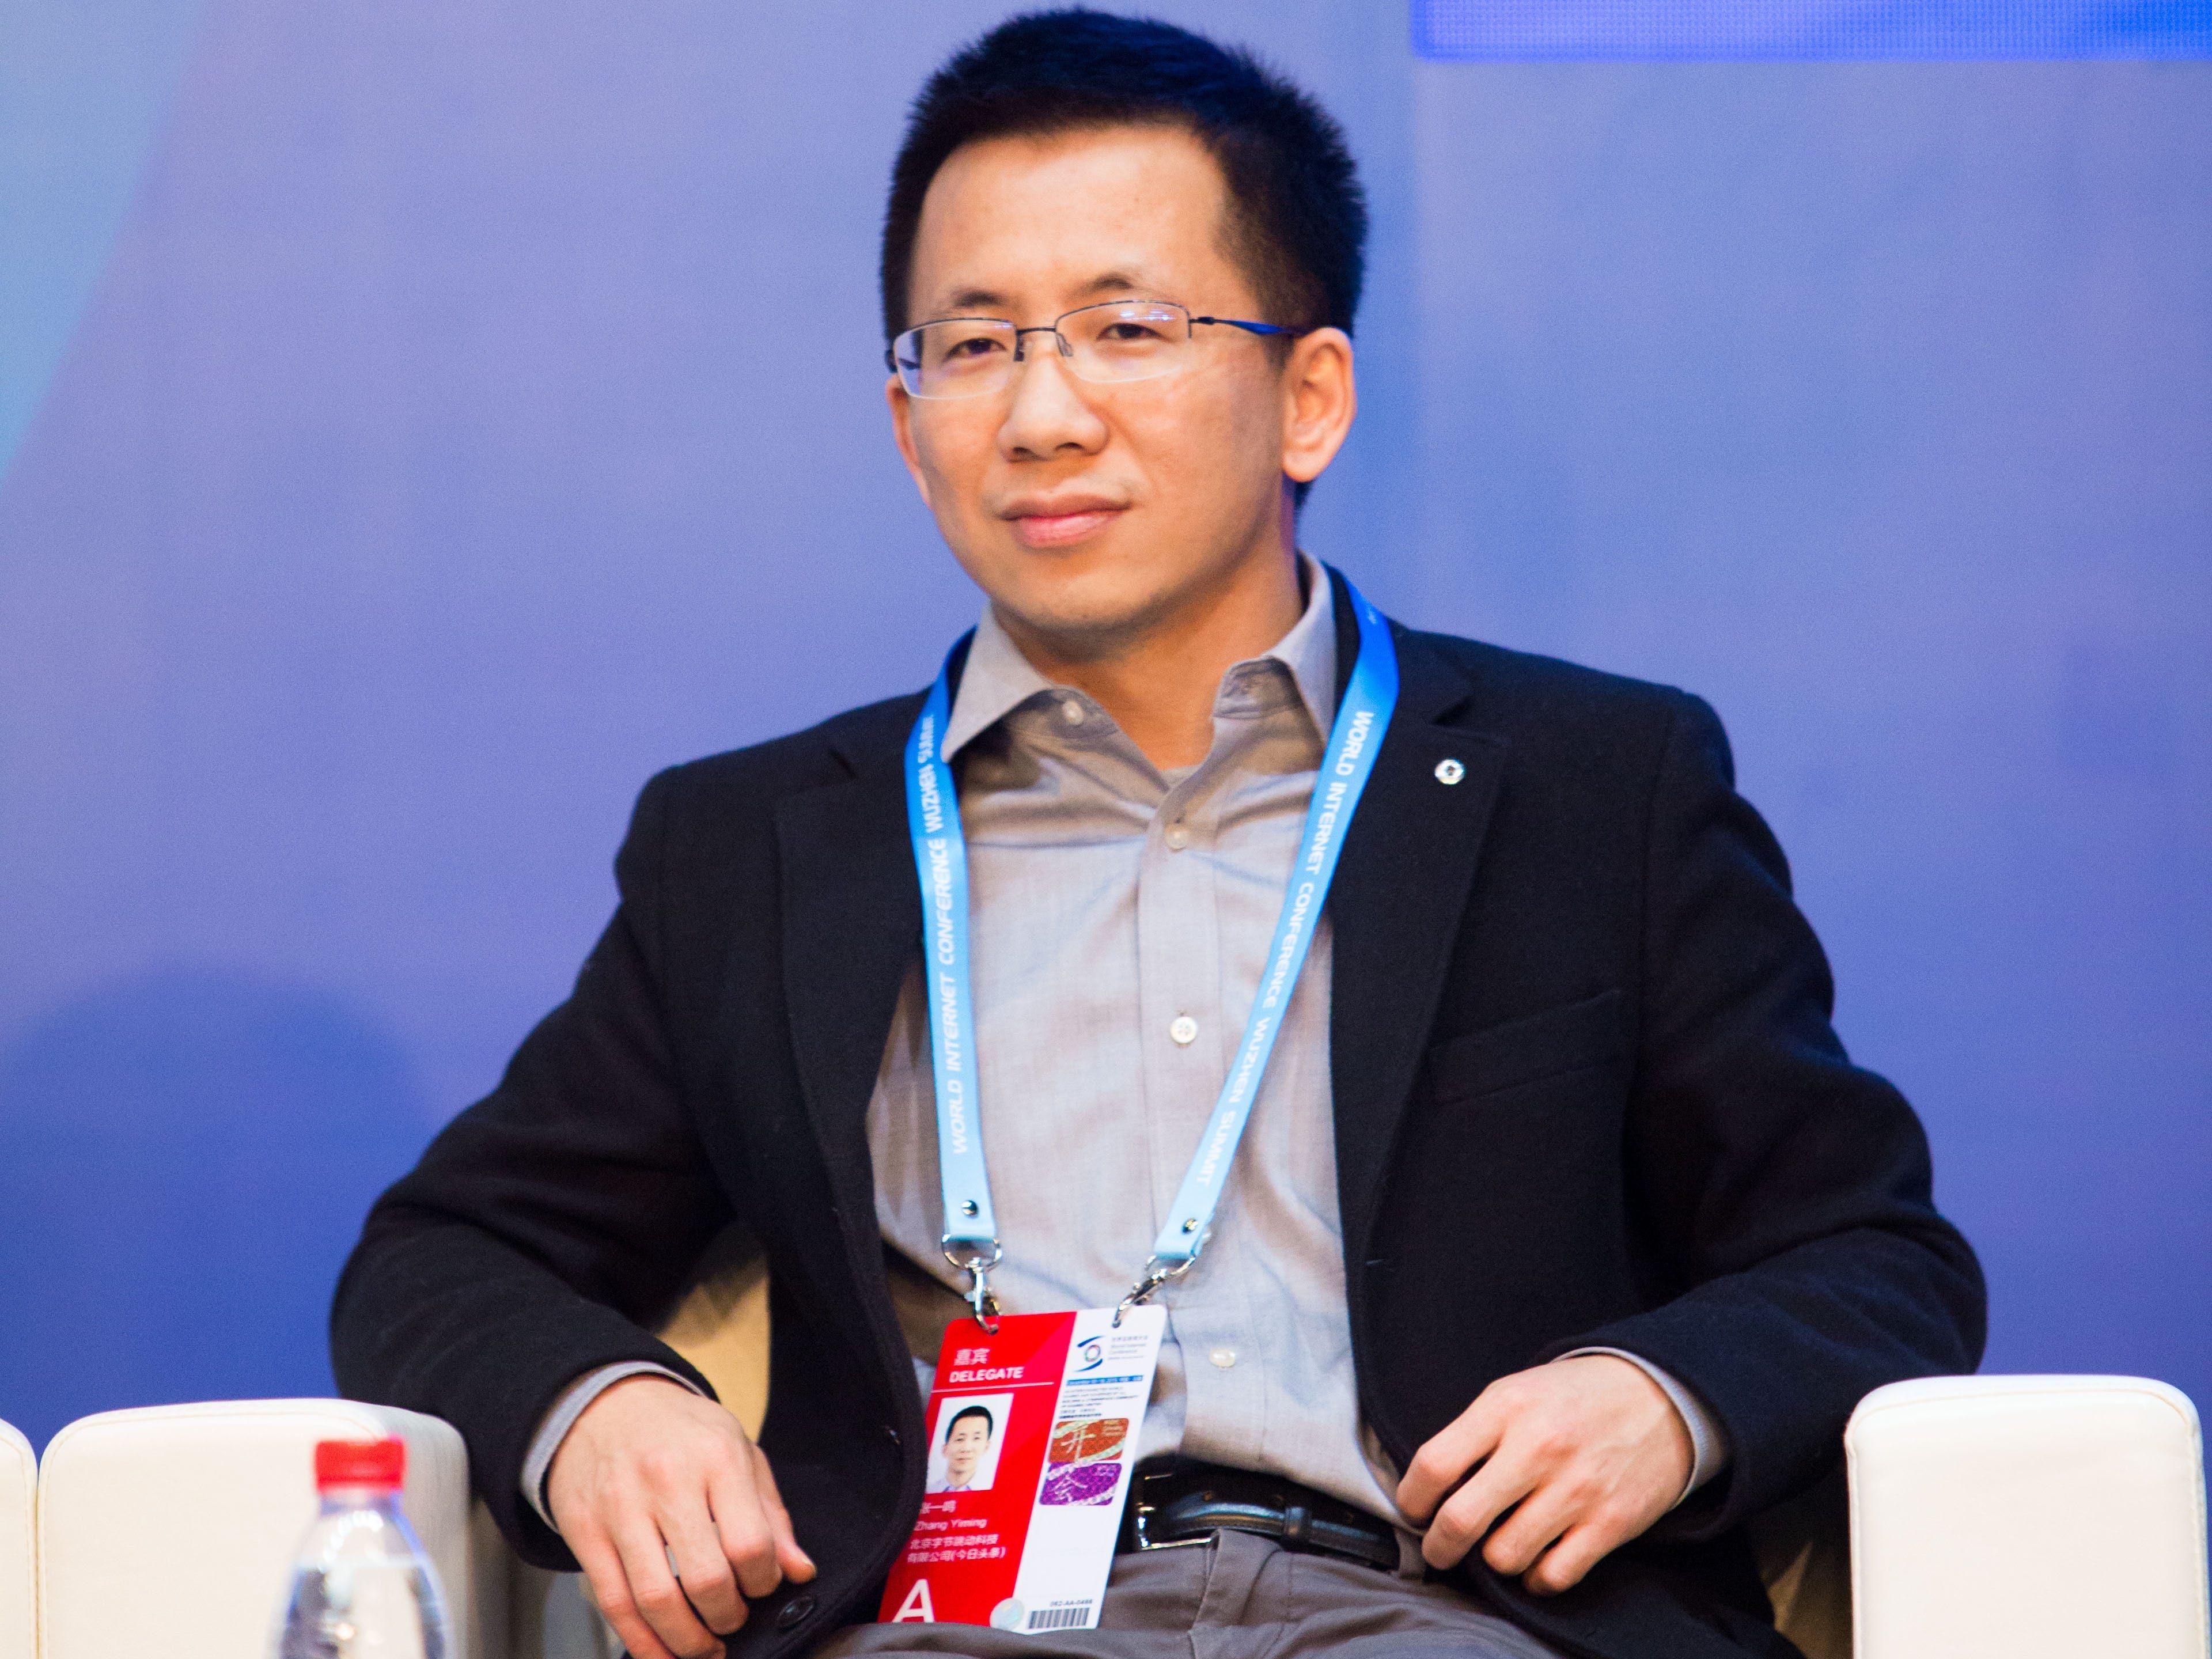 El fundador de ByteDance, Zhang Yiming, dejó de ser presidente de la empresa en noviembre.